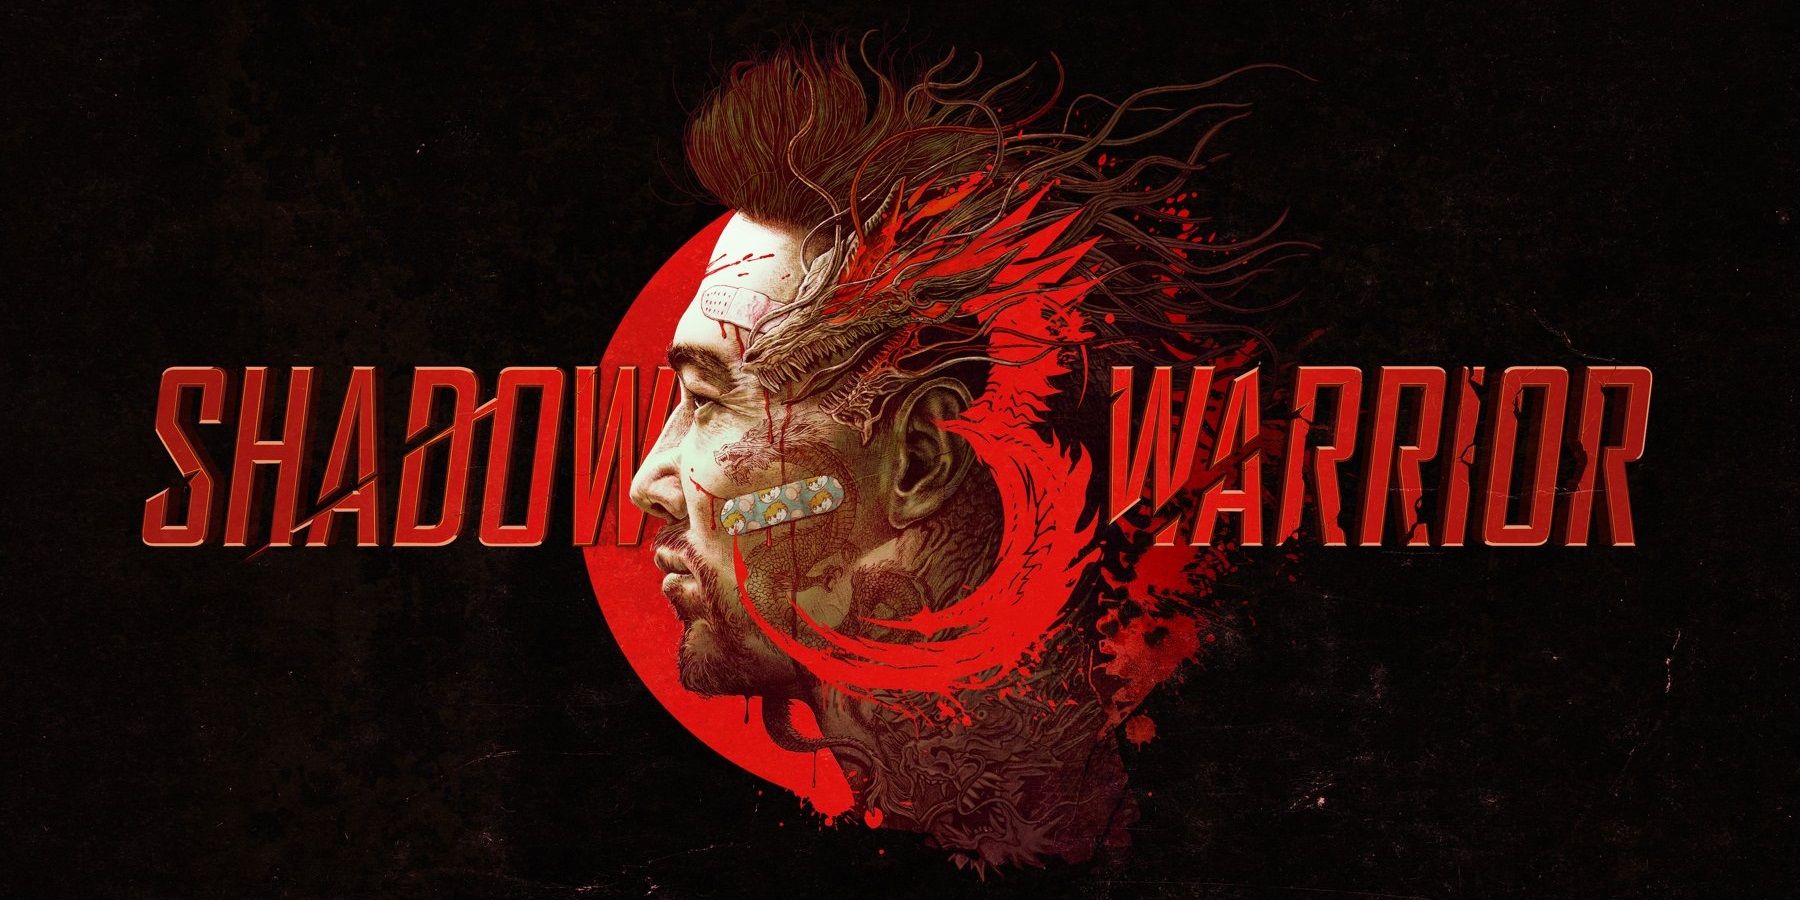 download shadow warrior 3 release date